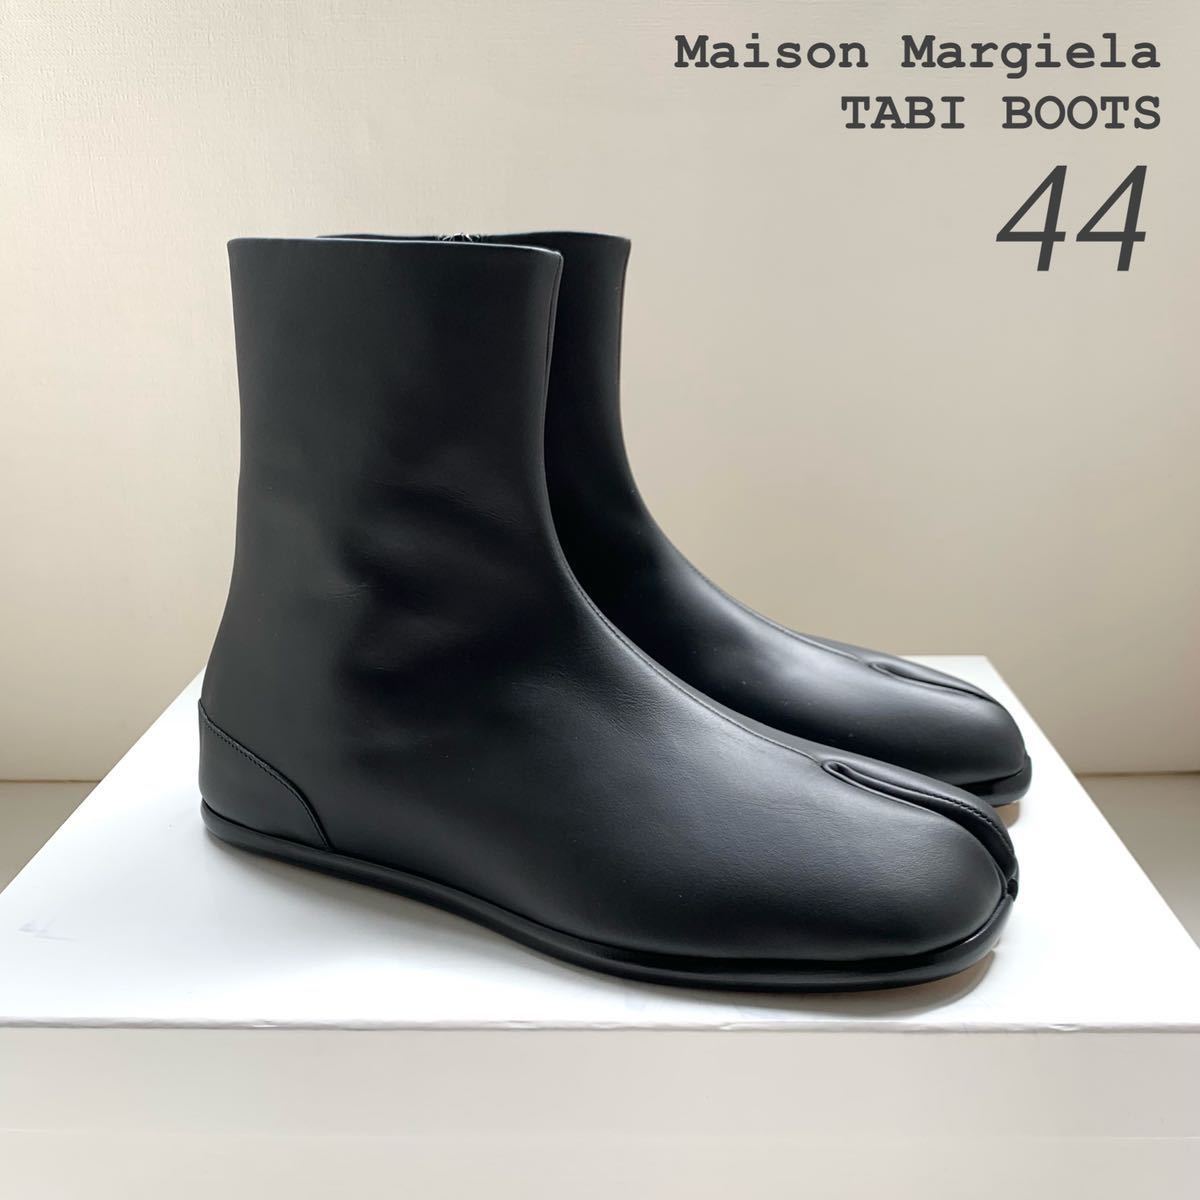 新品 Maison Margiela メゾンマルジェラ タビ フラット アンクル